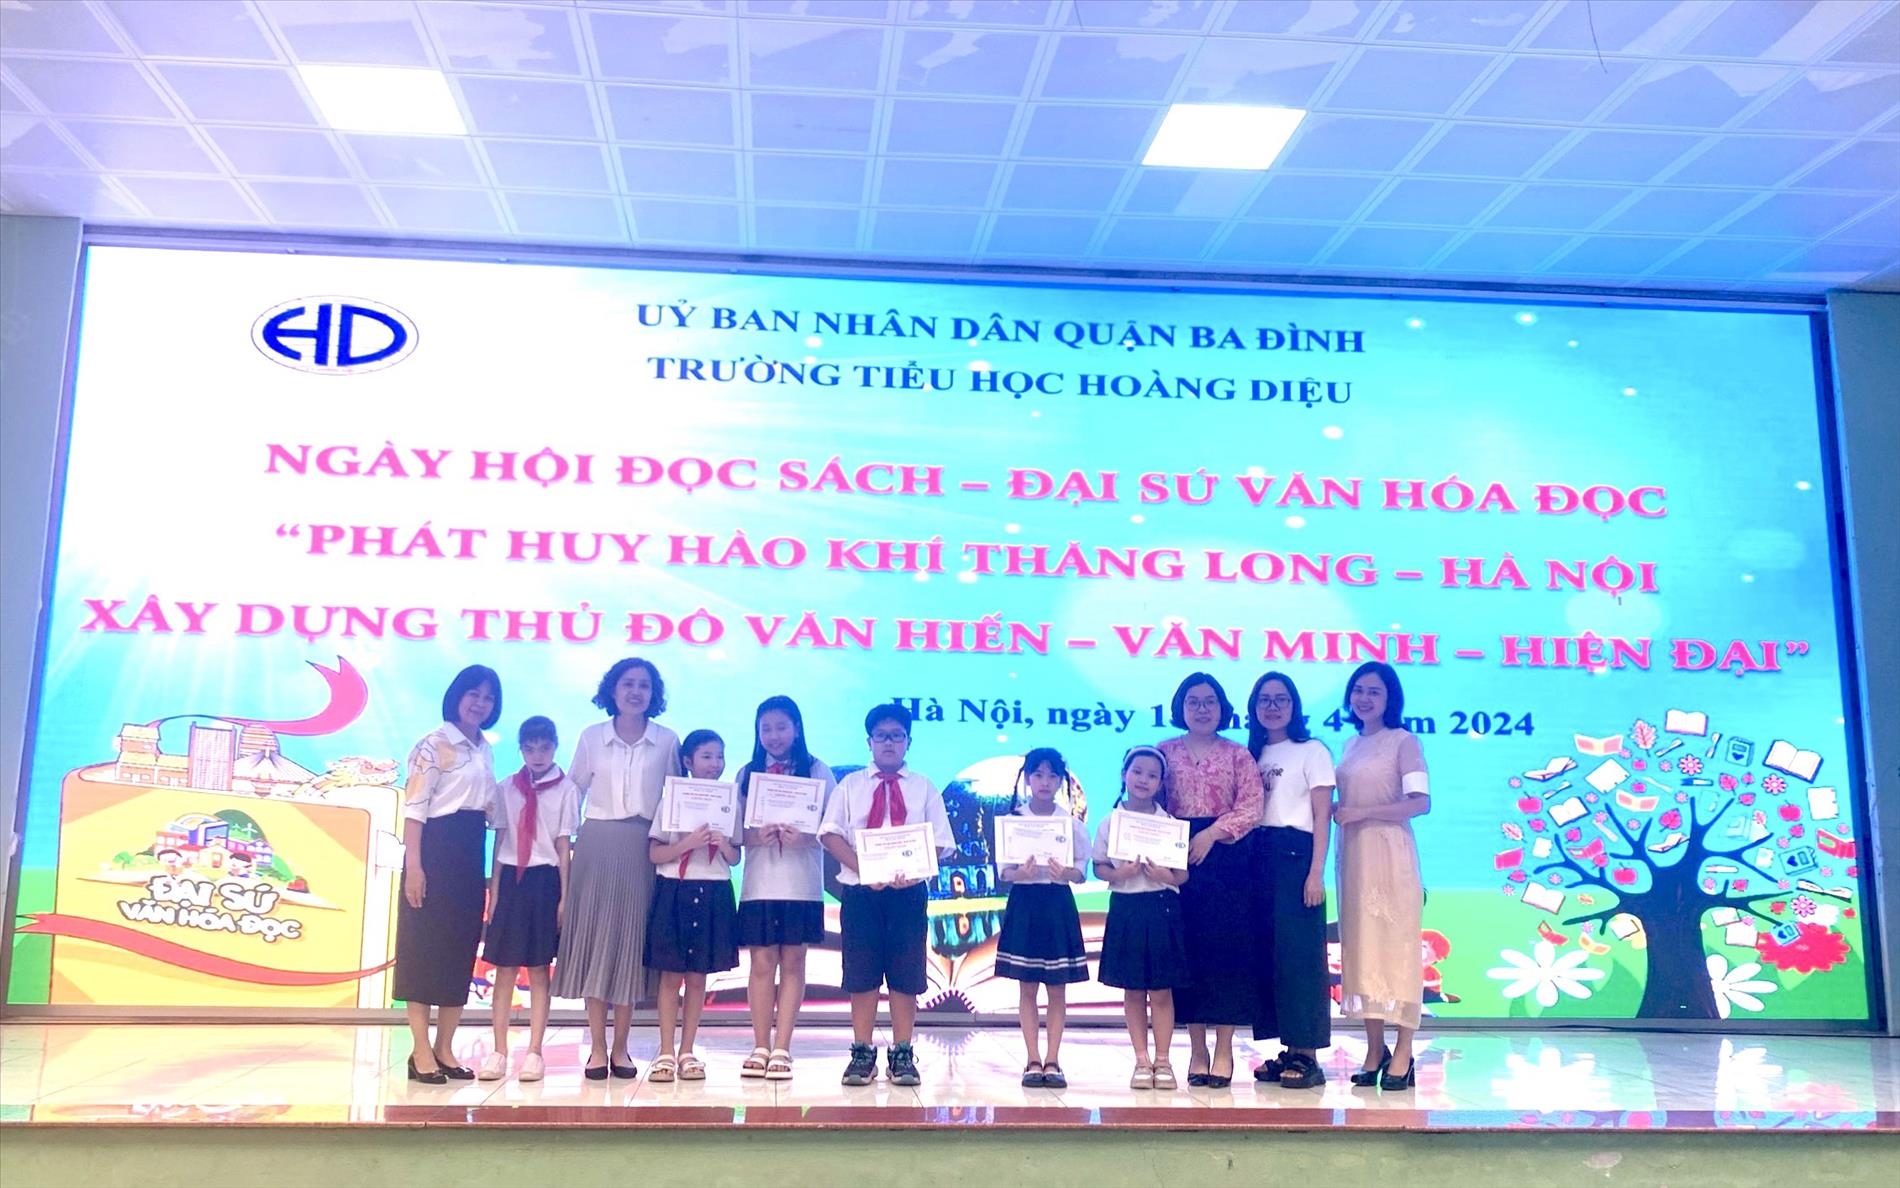 Trường Tiểu học Hoàng Diệu tổ chức Ngày hội đọc sách - Cuộc thi Đại sứ văn hóa đọc